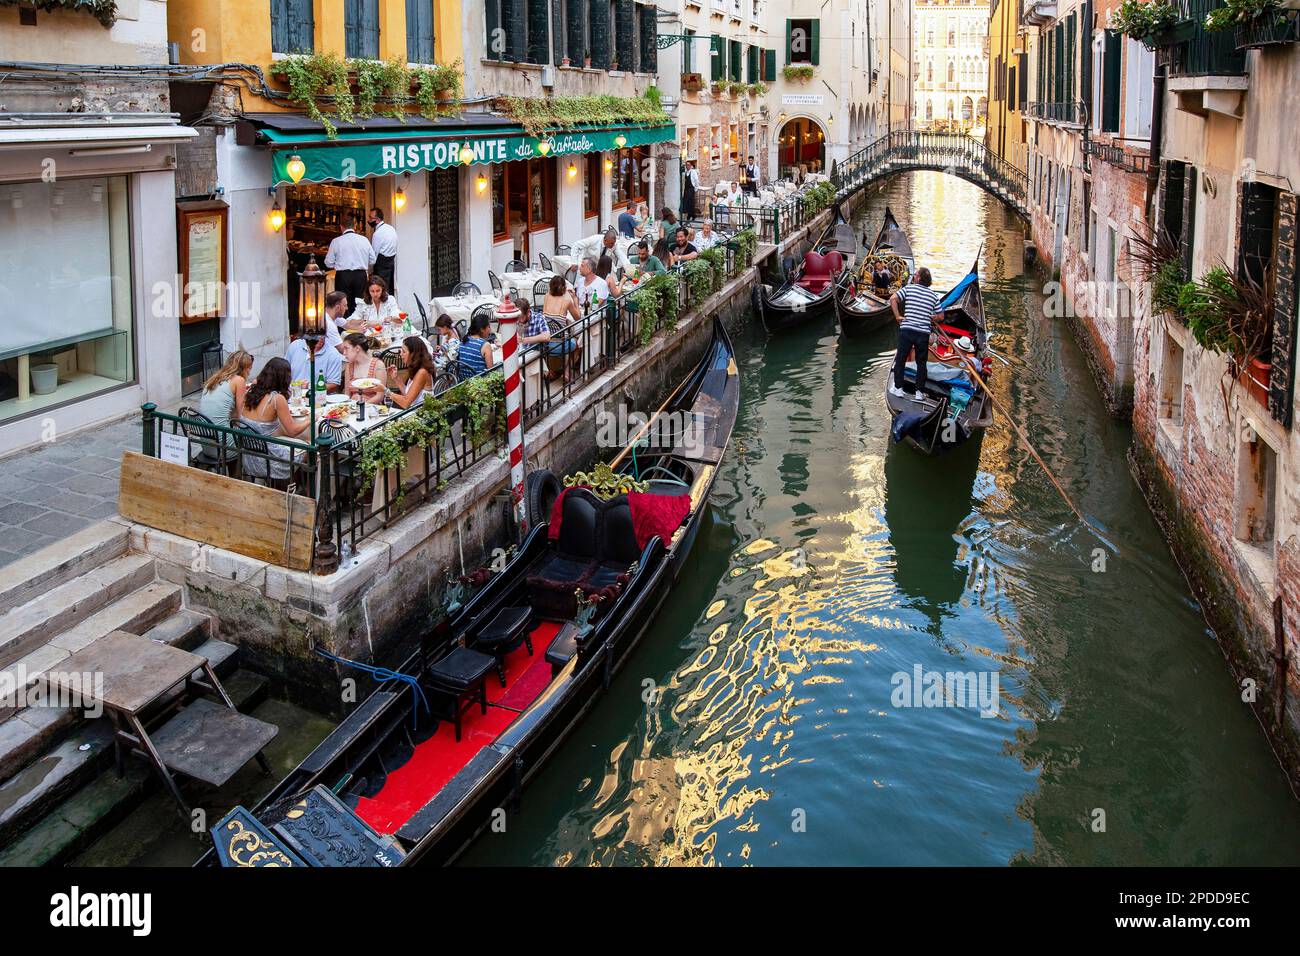 Typisches Restaurant in einem chanel mit Gondeln, Italien, Venedig Stockfoto